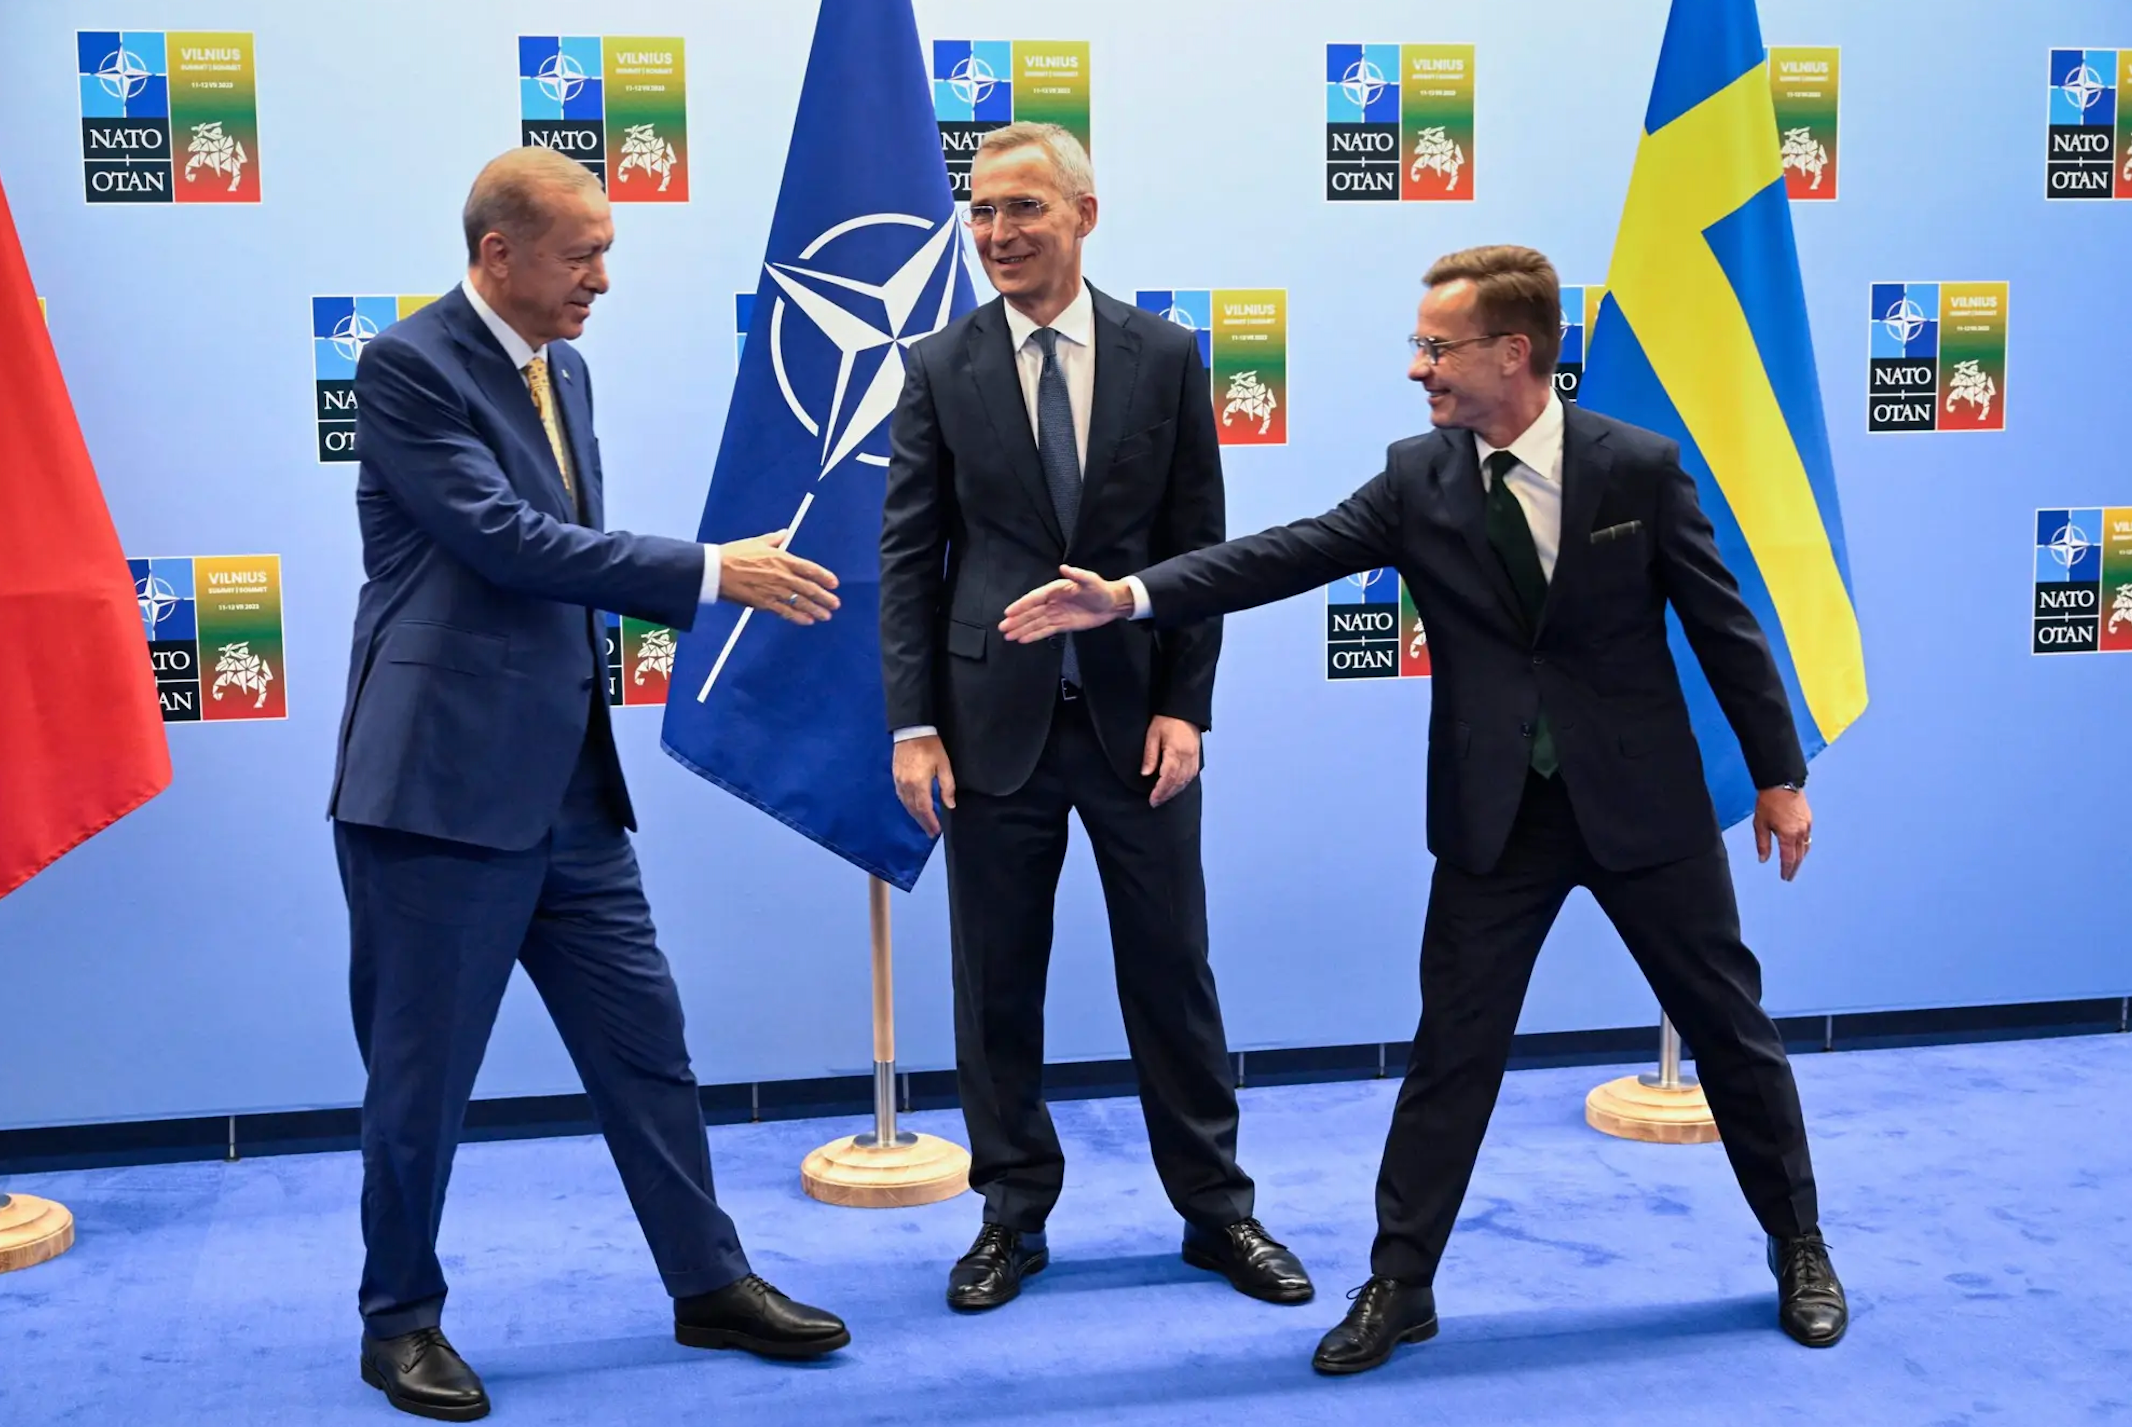 NATO photo